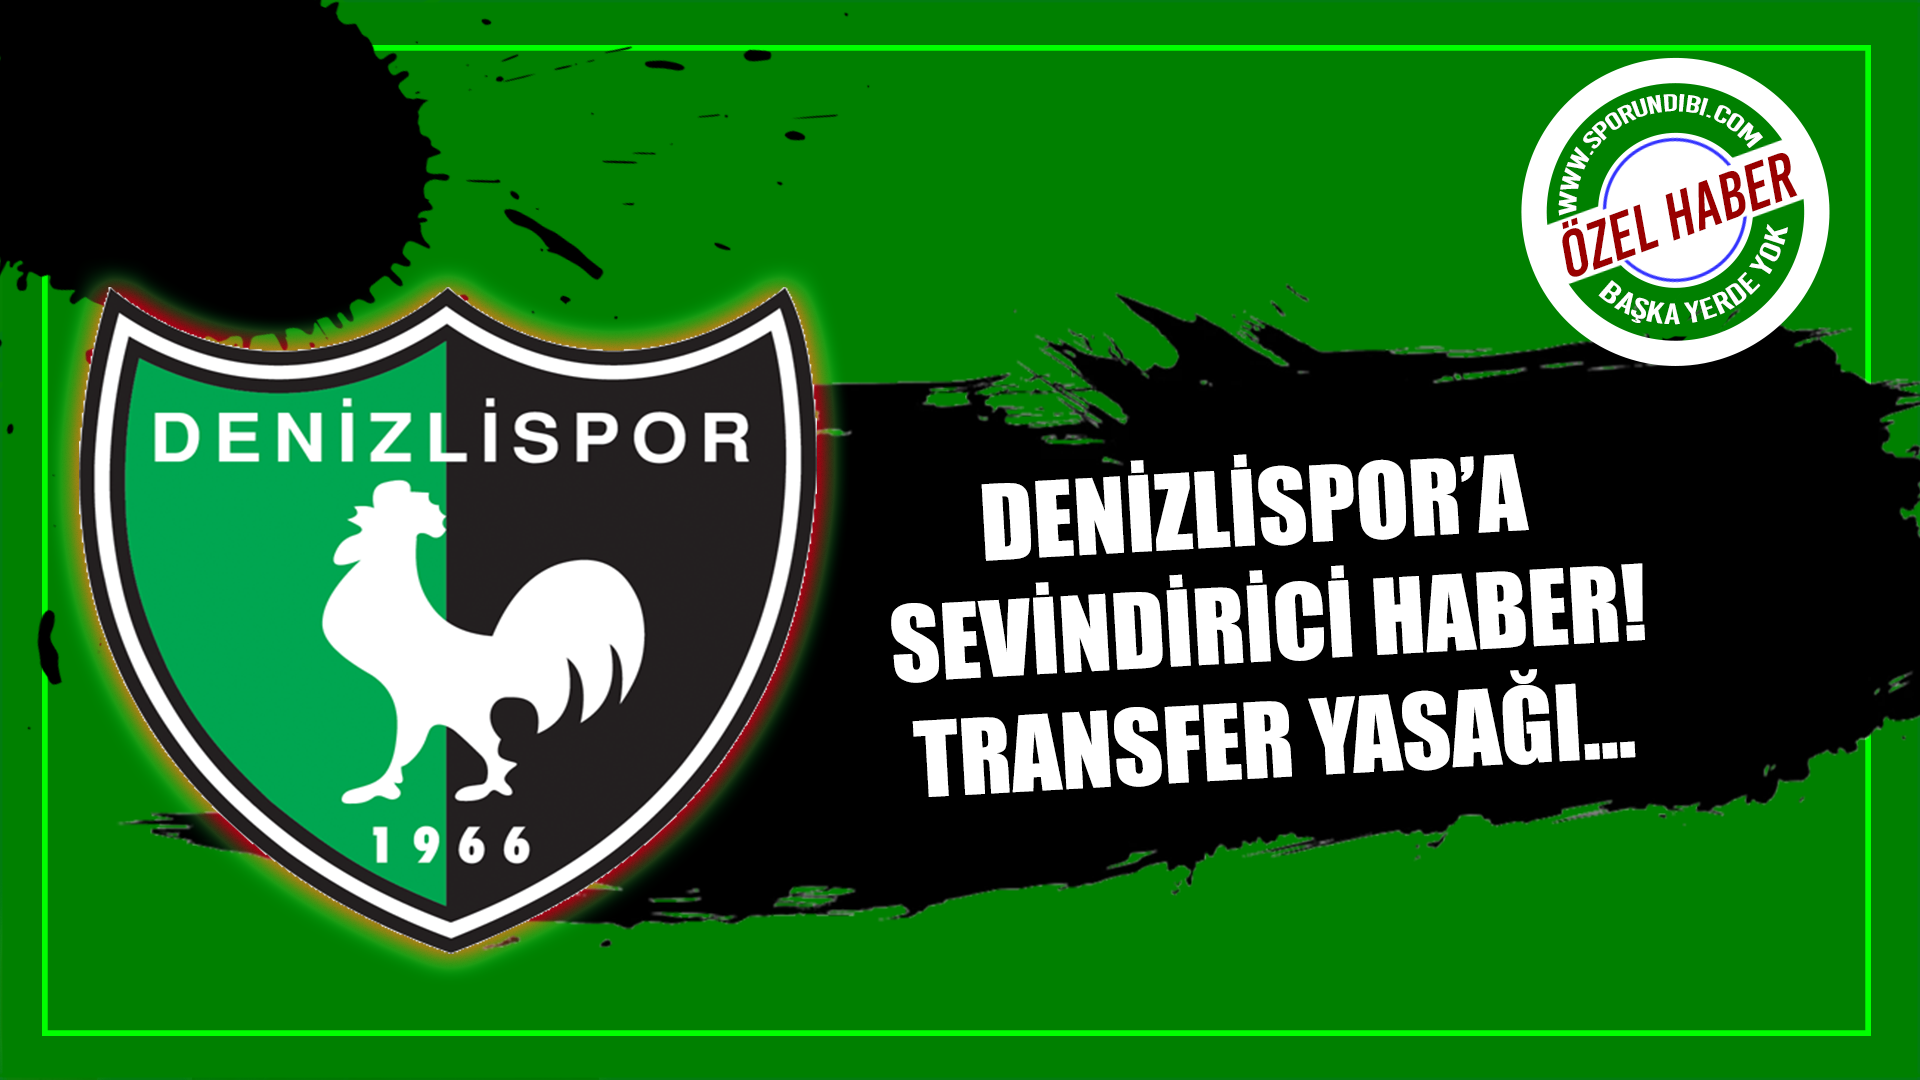 Denizlispor'a sevindirici haber! Transfer yasağı...